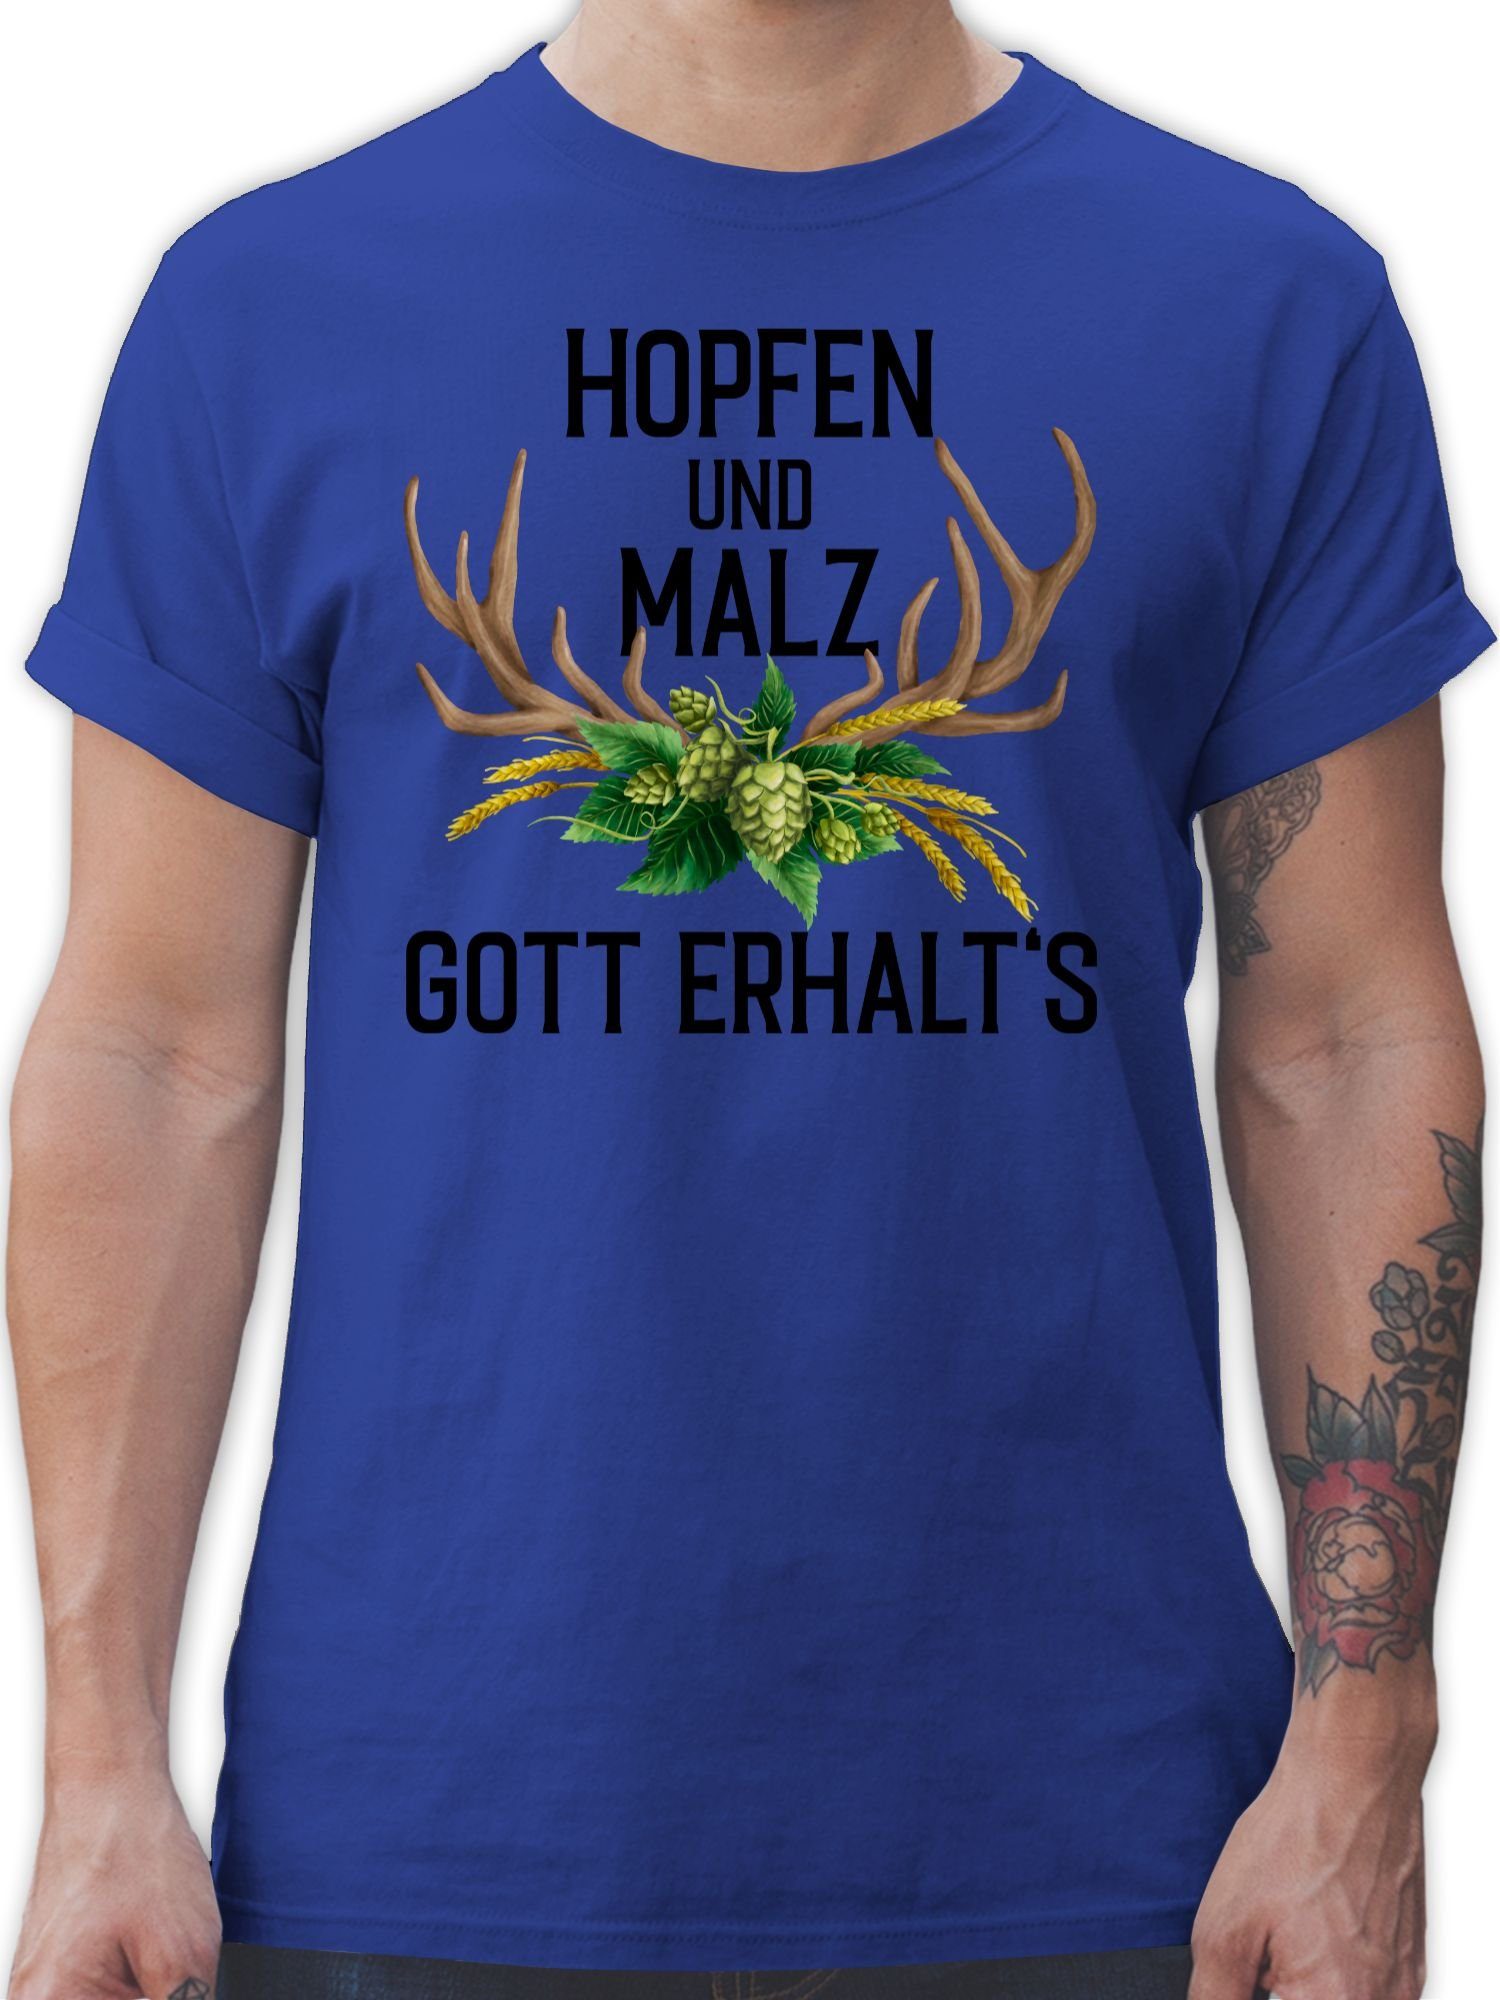 Shirtracer T-Shirt Hopfen und Malz Gott erhalt's - mit Geweih & Weizen Mode für Oktoberfest Herren 1 Royalblau